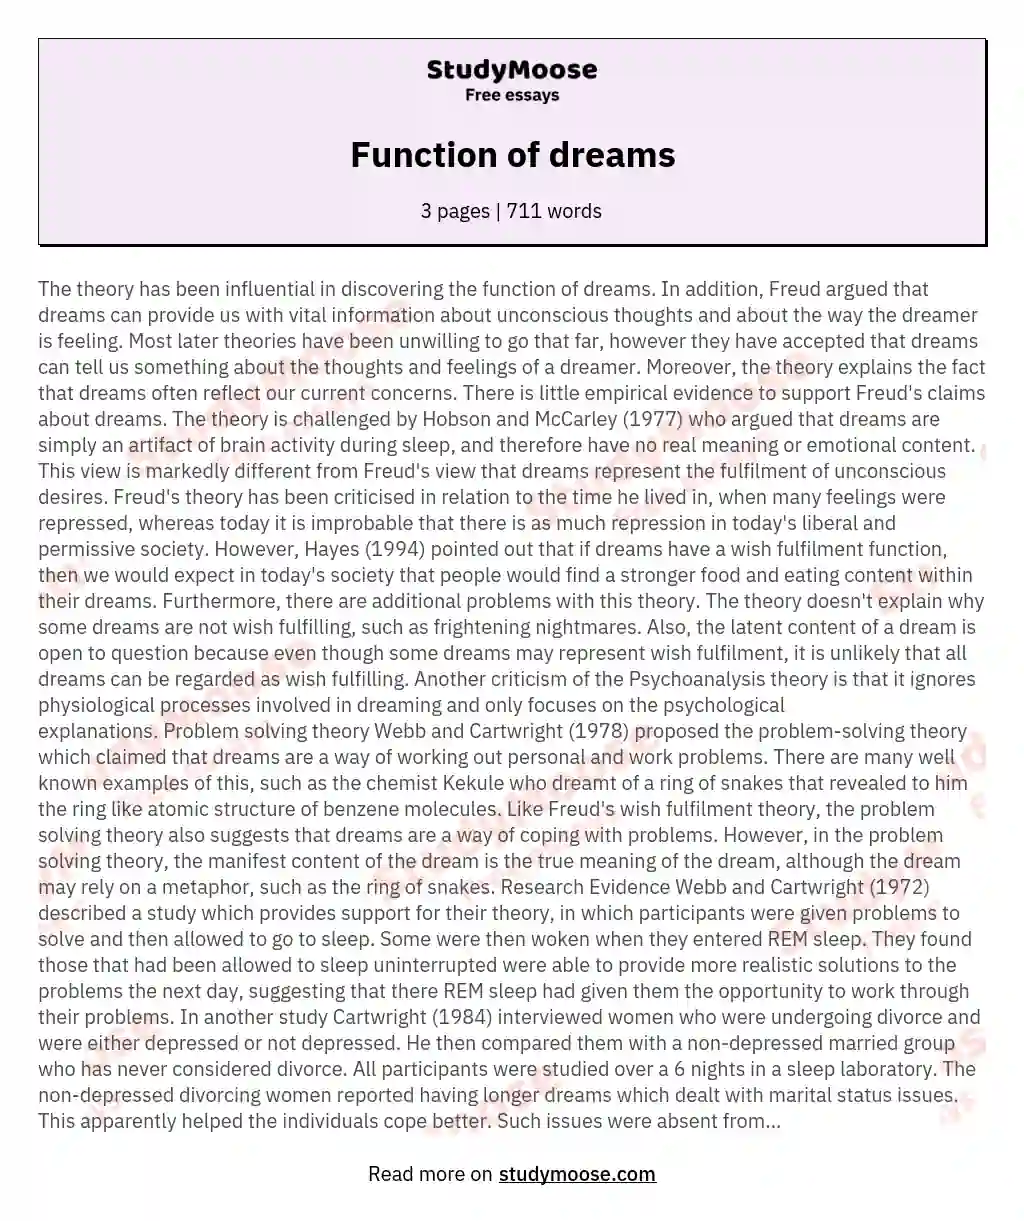 Function of dreams essay